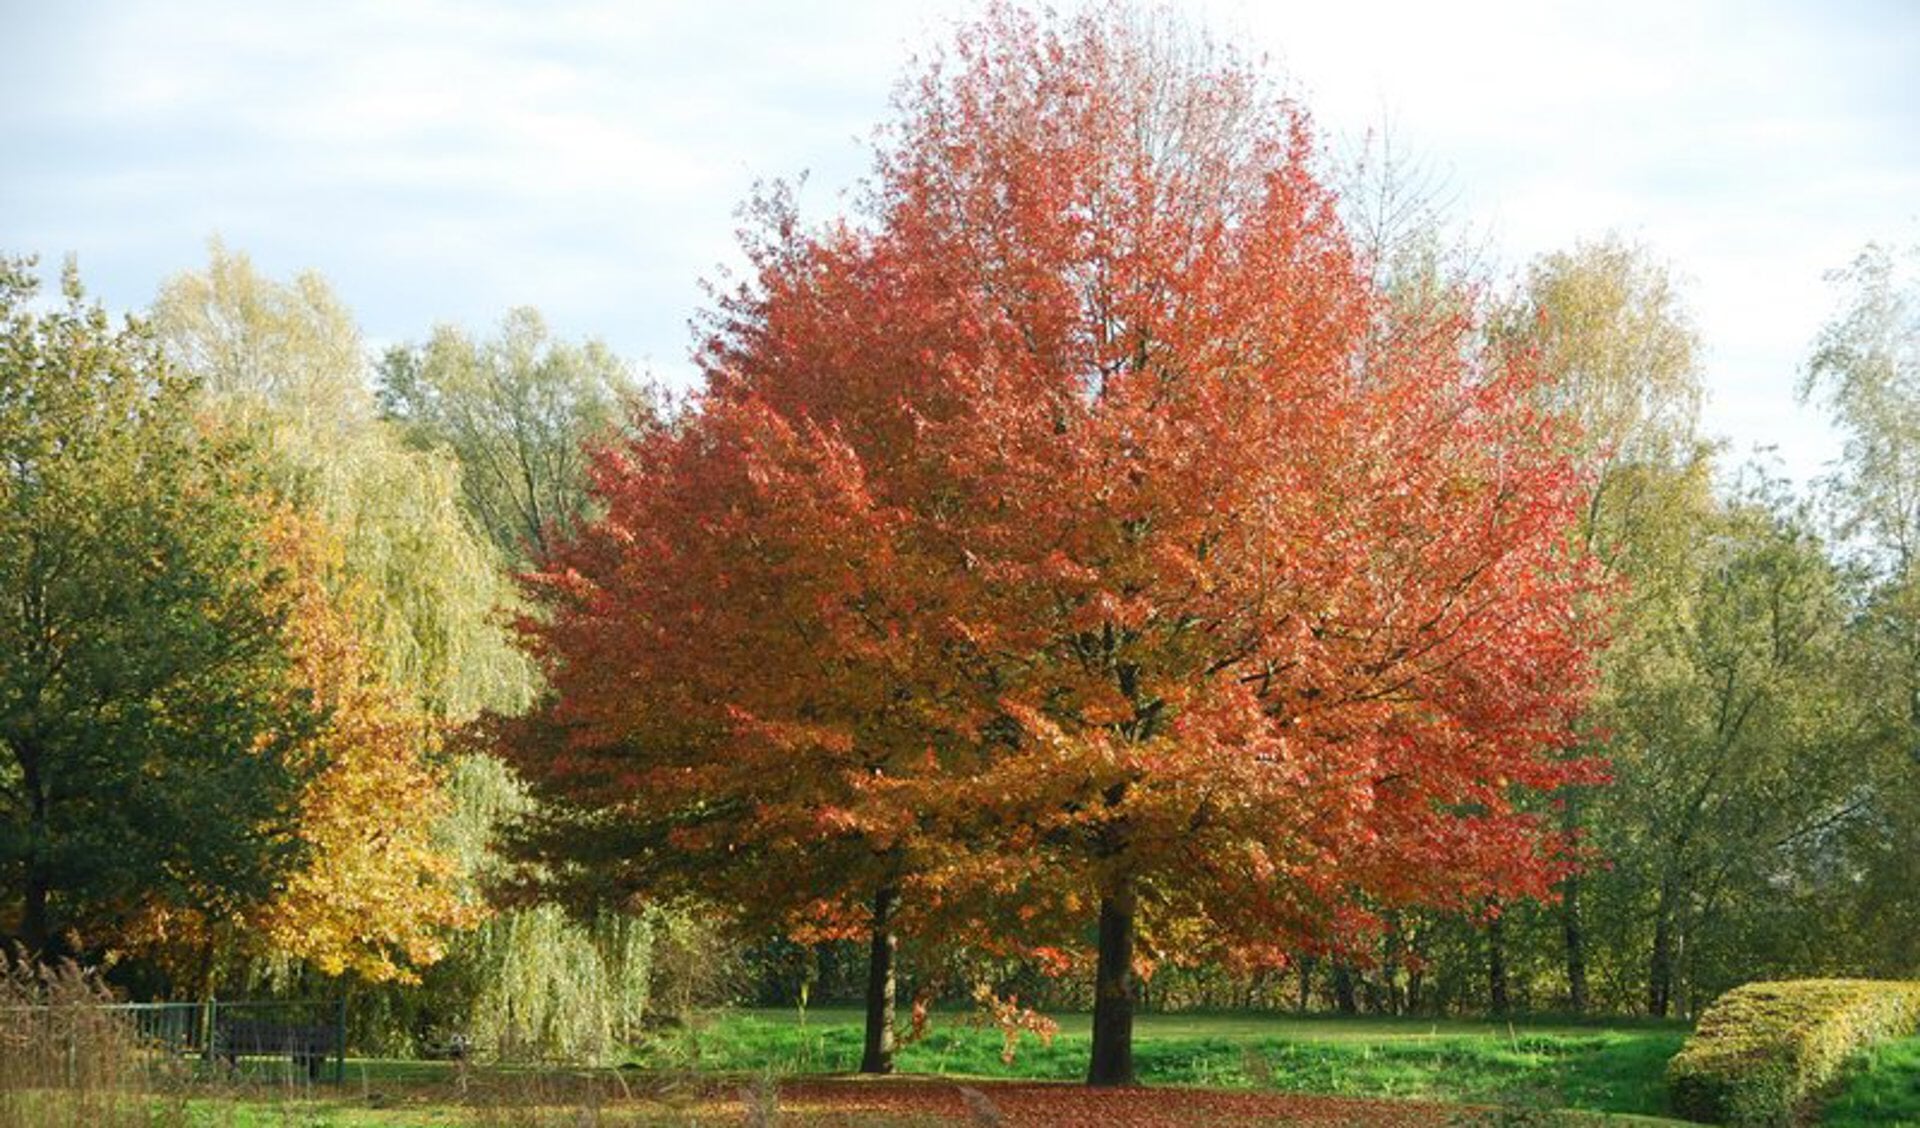 De Amerikaanse eik staat bekend om zijn prachtige herfstkleuren.